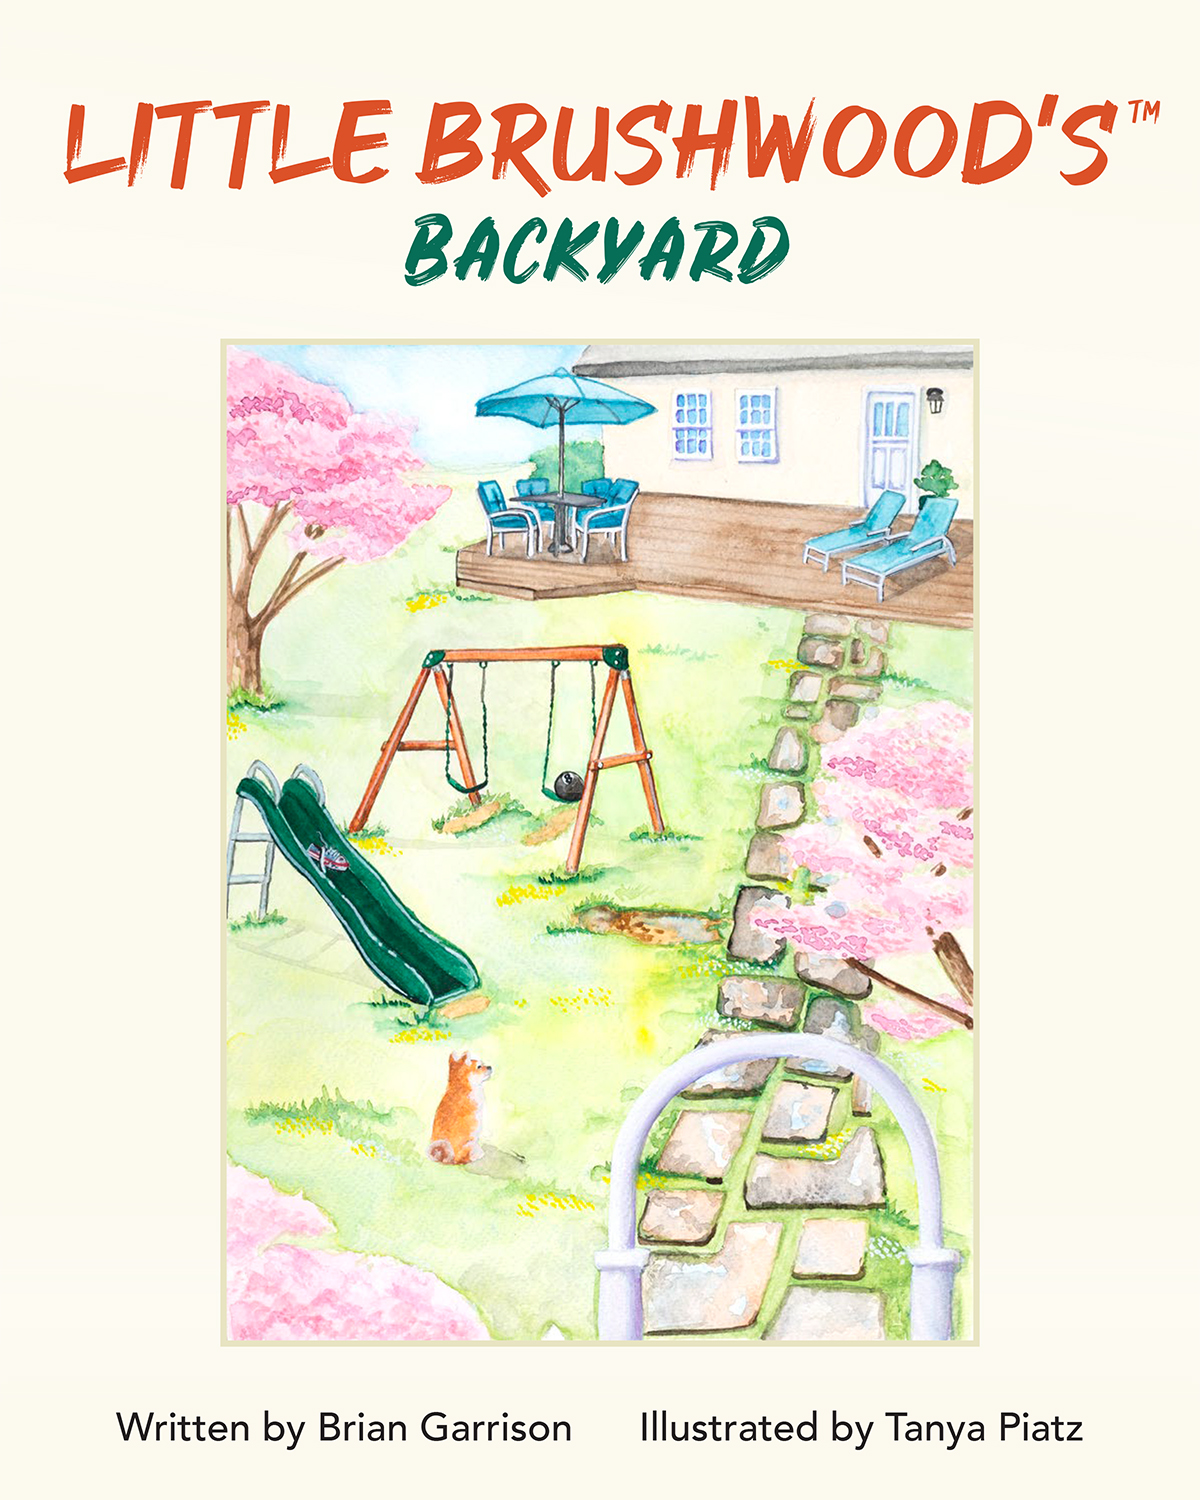 Little Brushwood's Backyard children's book cover